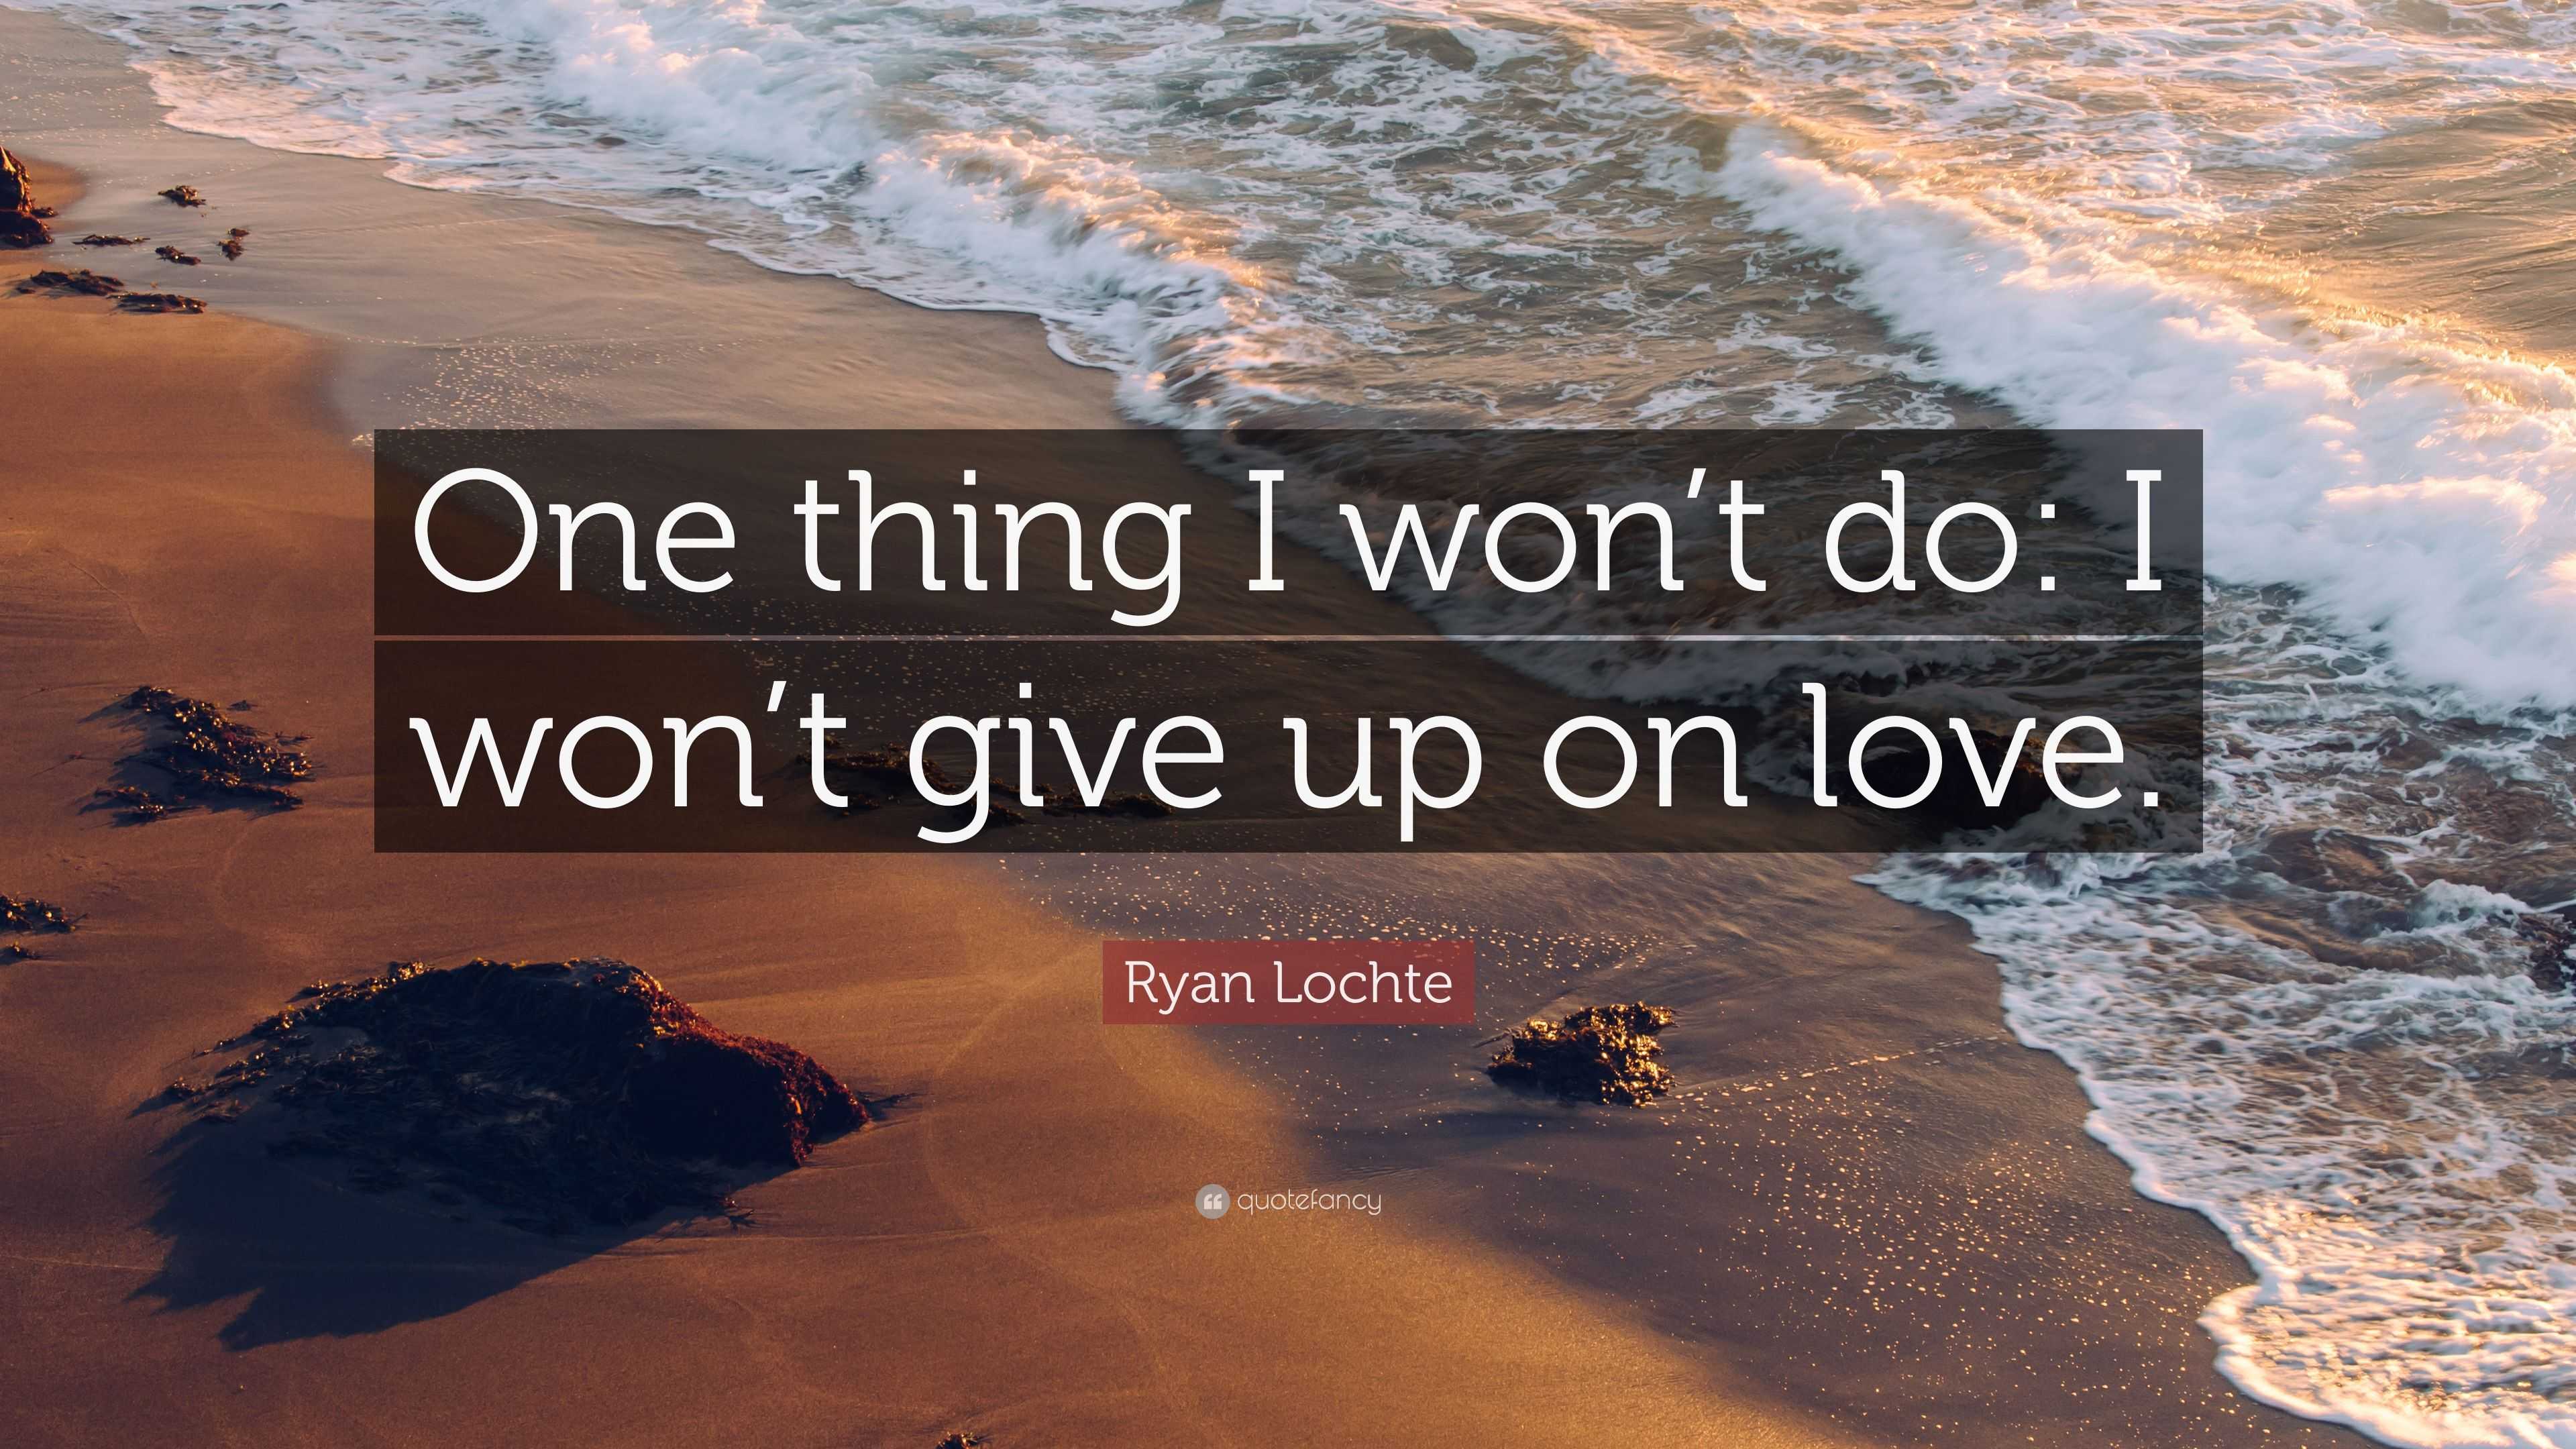 Ryan Lochte Quote “ e thing I won t do I won